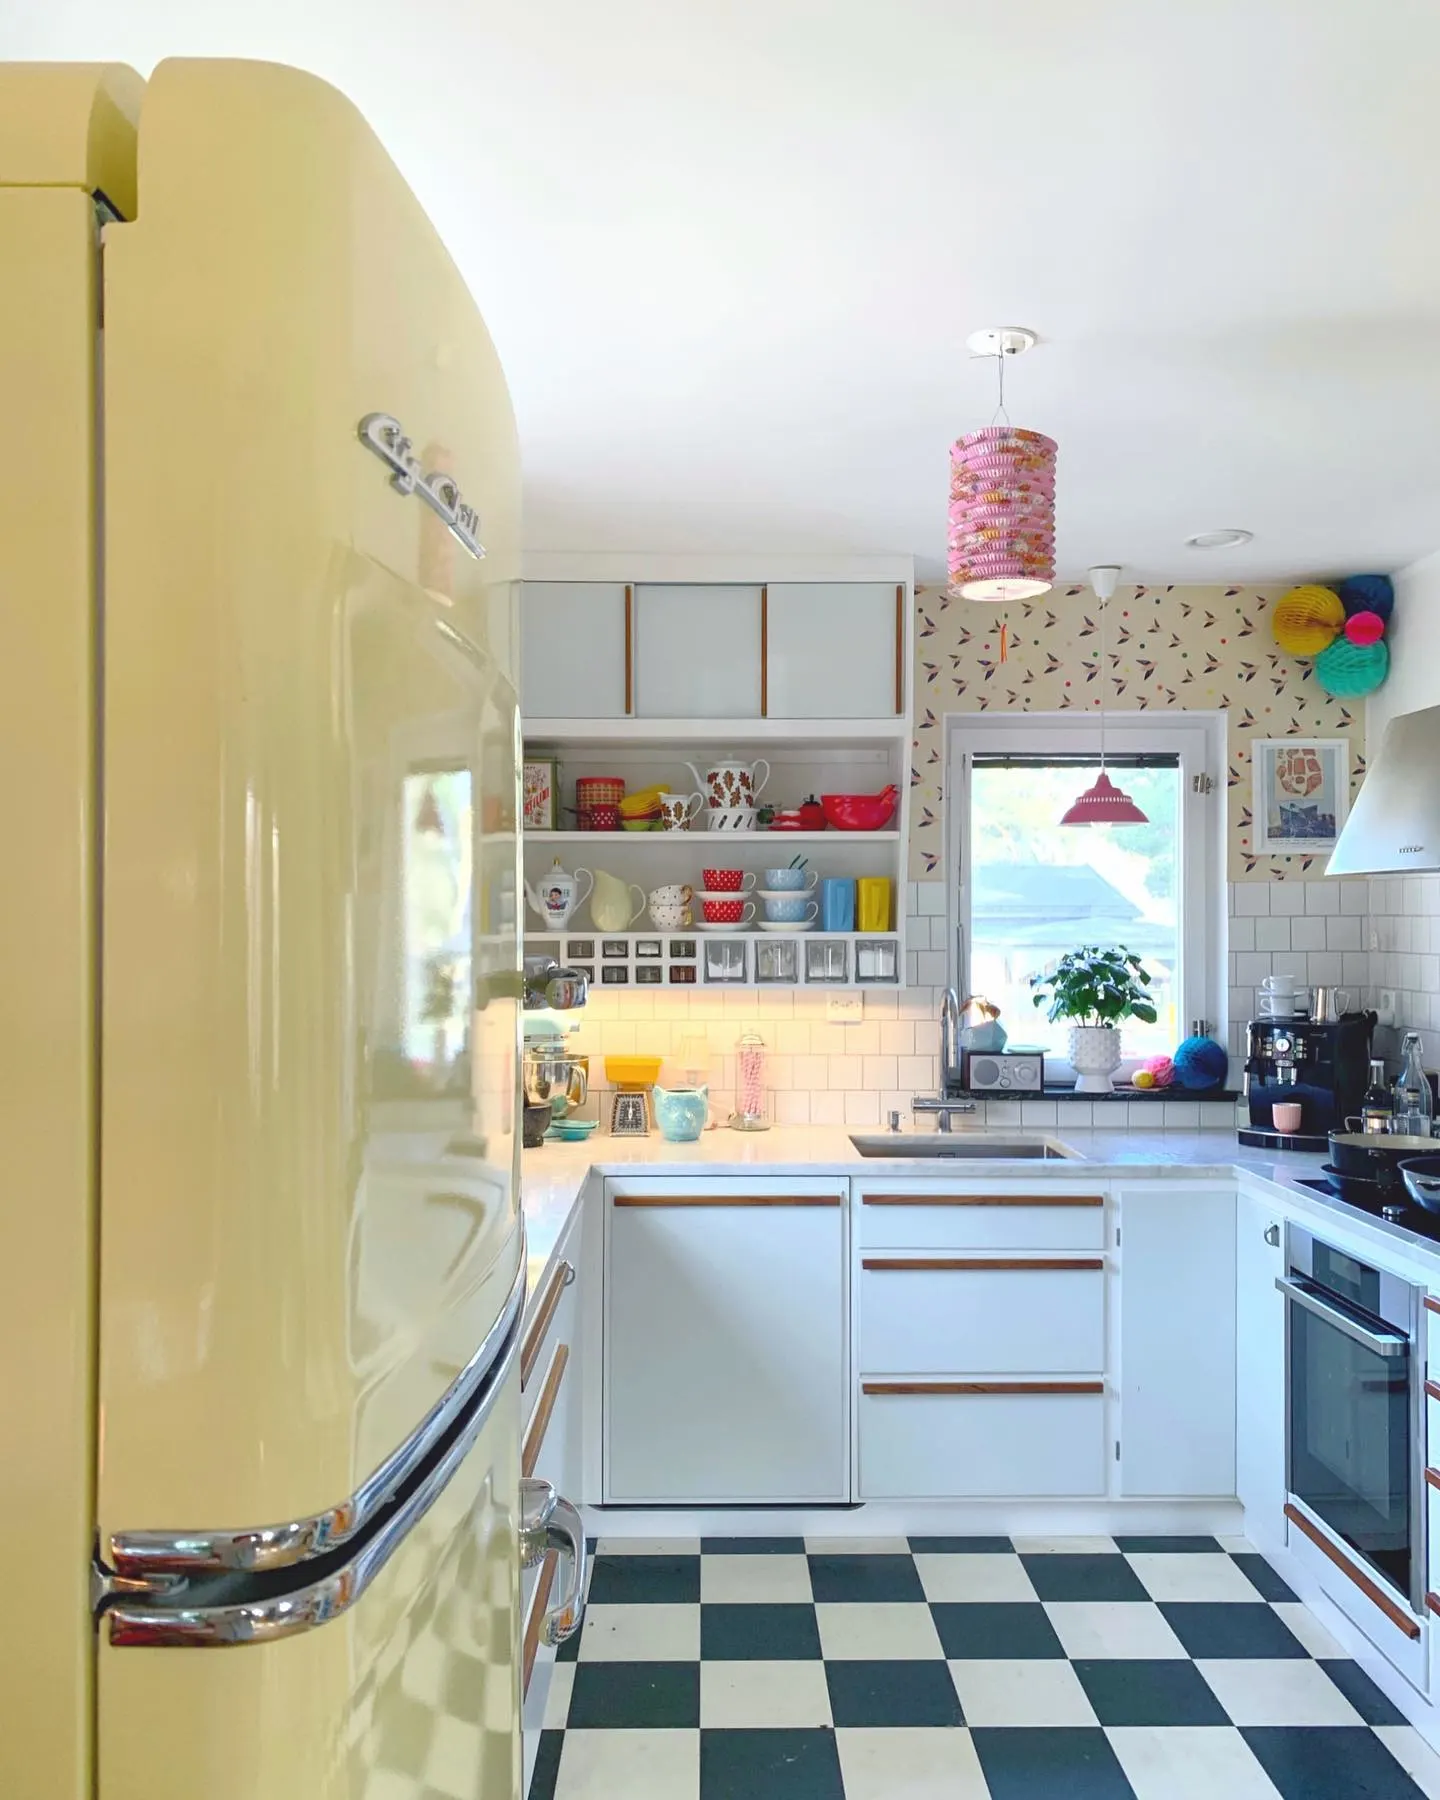 cozinha retrô com geladeira de cor amarelo-claro